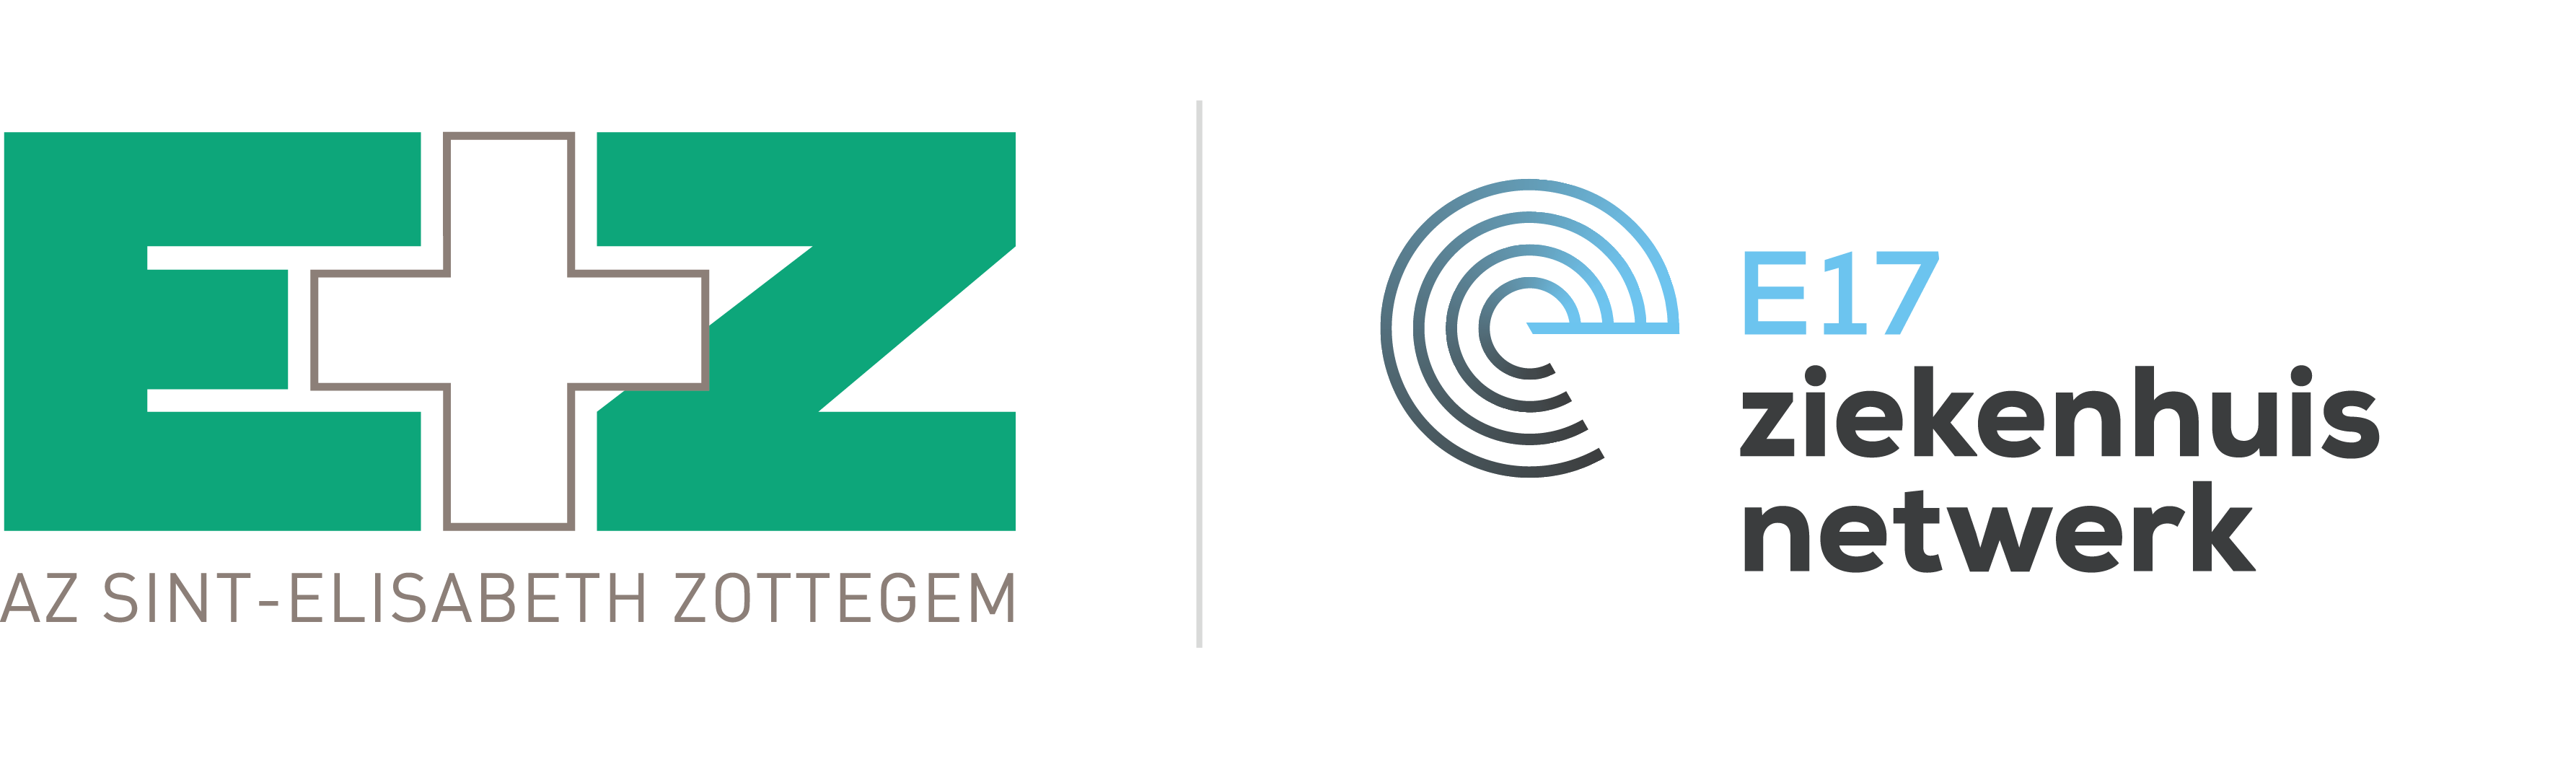 AZ Sint-Elisabeth Zottegem logo